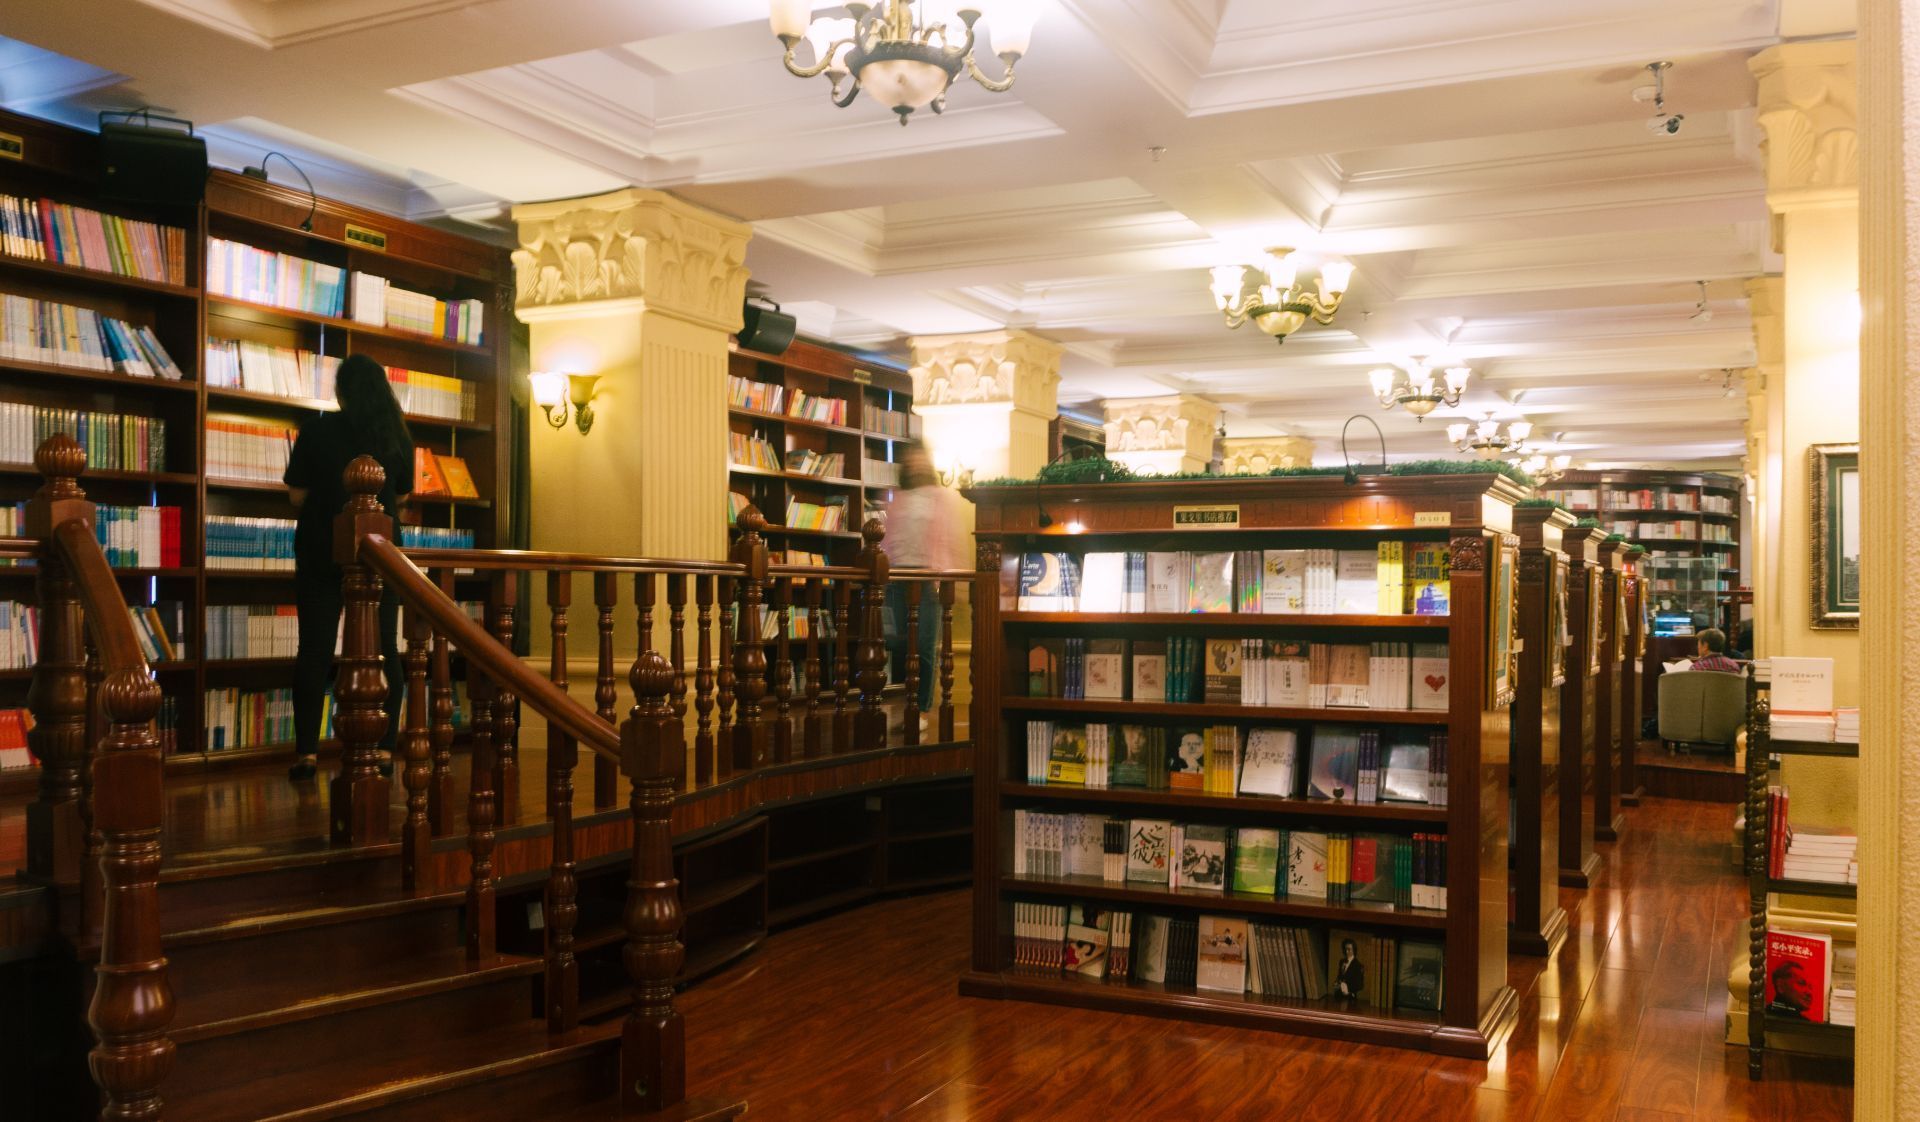 【携程攻略】哈尔滨果戈里书店购物,这个被誉为哈尔滨最美书店的果戈